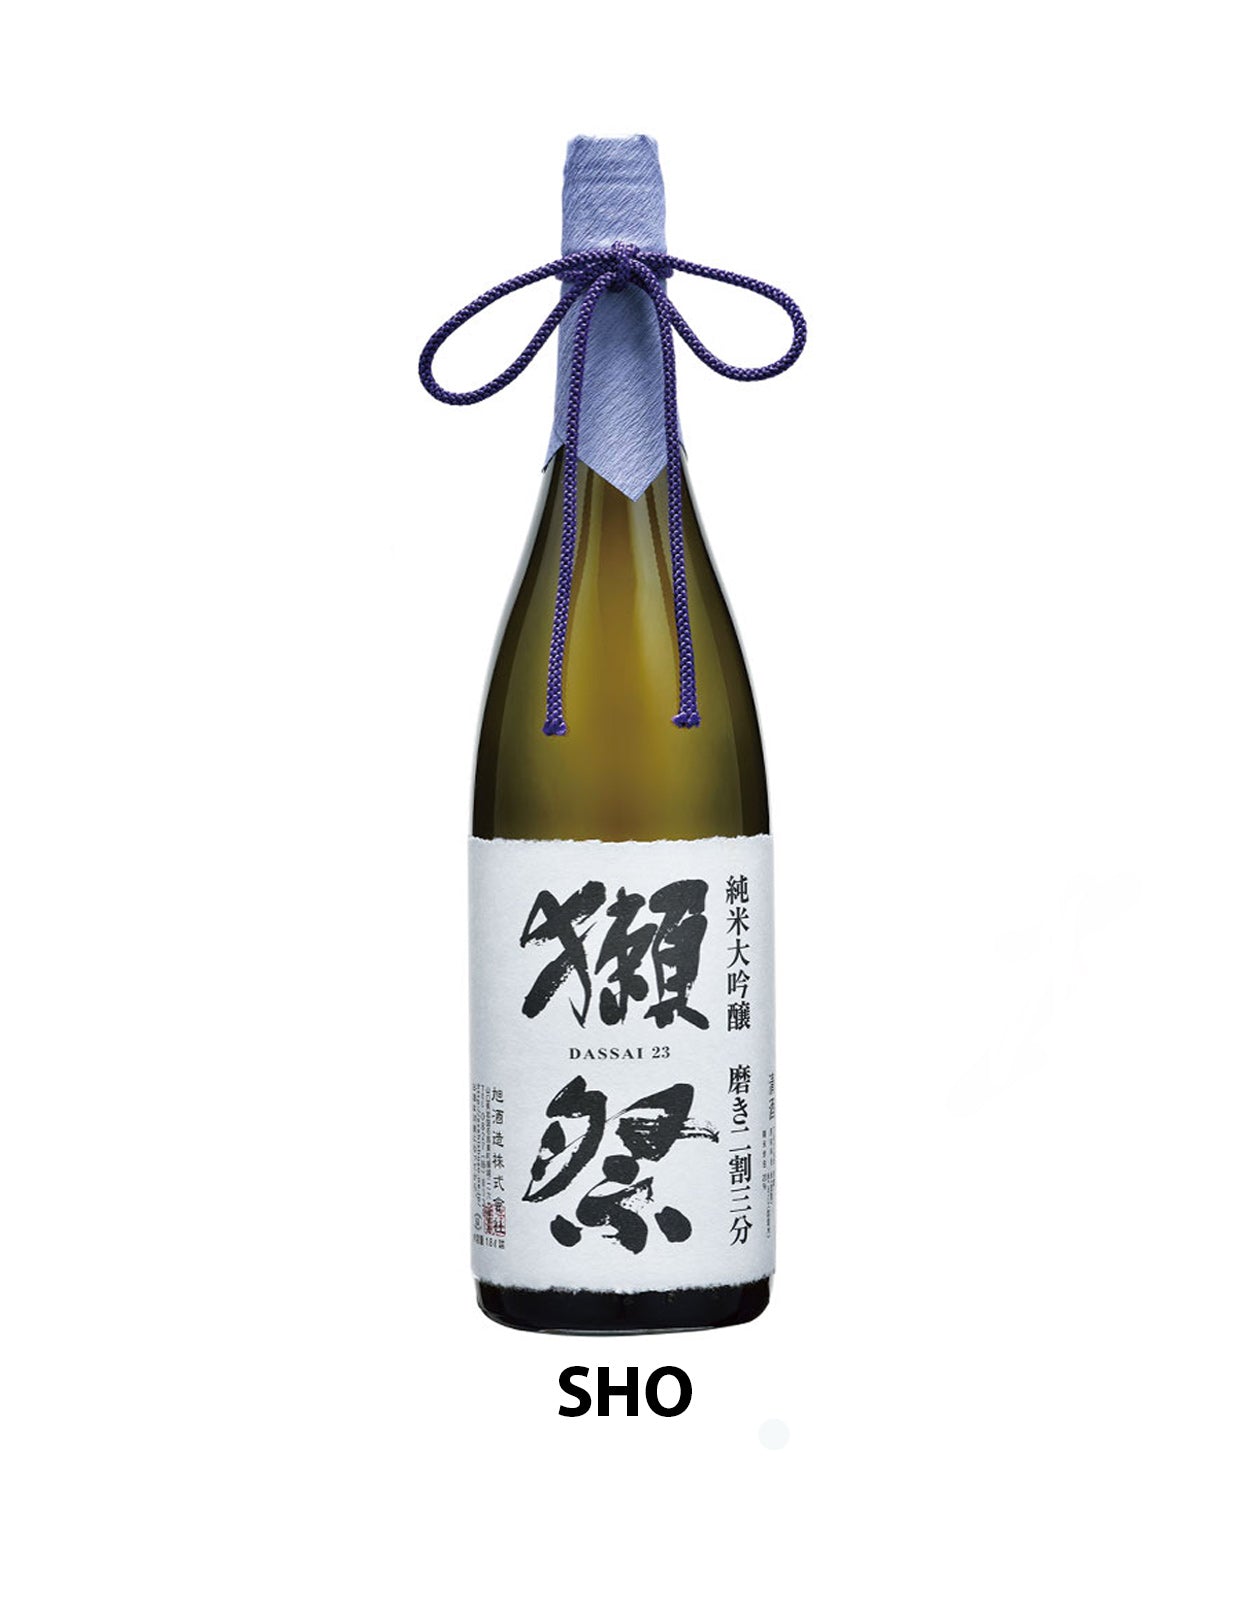 Asahi Shuzo Dassai '23' Junmai Daiginjo Sake - 1.8 Litre Bottle